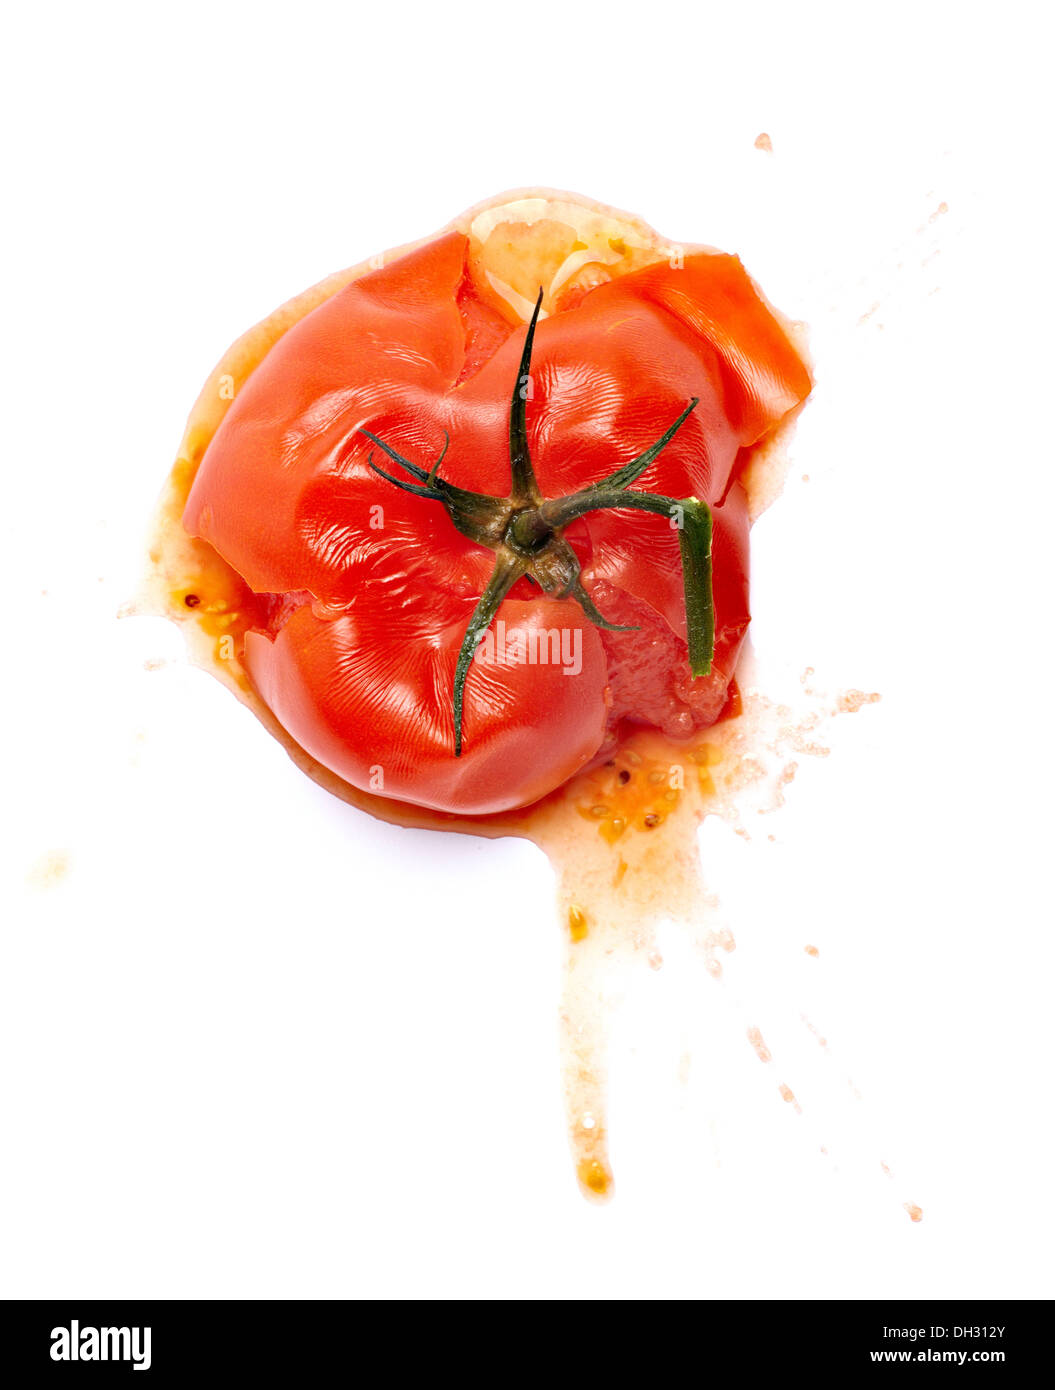 smashed tomato Stock Photo